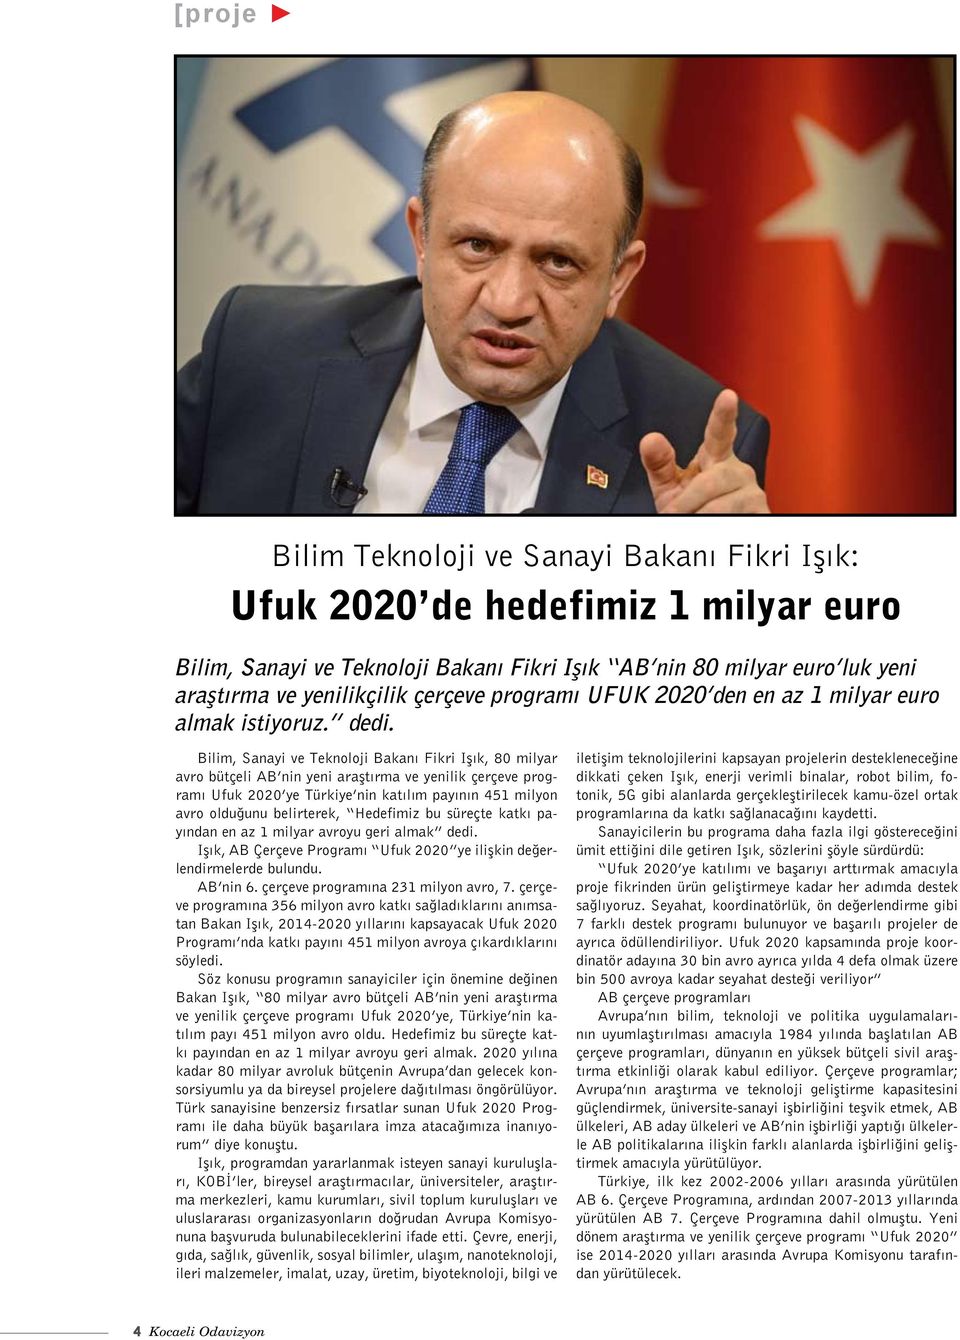 Bilim, Sanayi ve Teknoloji Bakanı Fikri Işık, 80 milyar avro bütçeli AB nin yeni araştırma ve yenilik çerçeve programı Ufuk 2020 ye Türkiye nin katılım payının 451 milyon avro olduğunu belirterek,